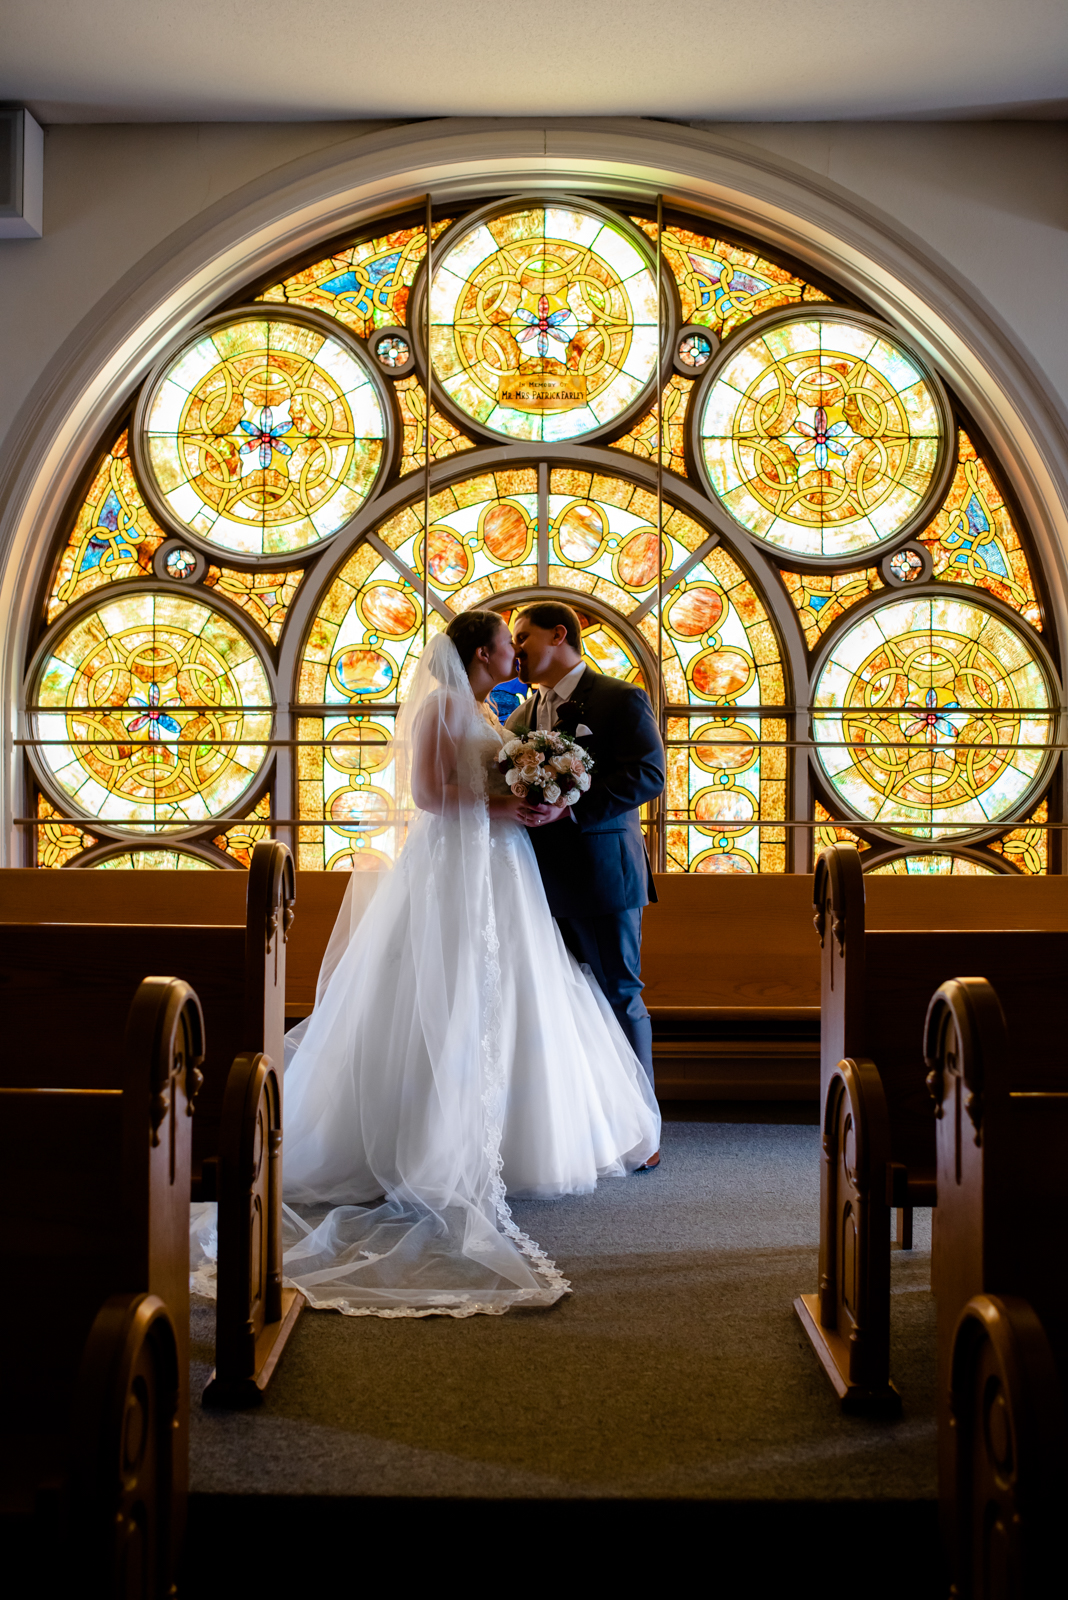 DSC 1581 - How to Plan a Catholic Wedding Day Timeline